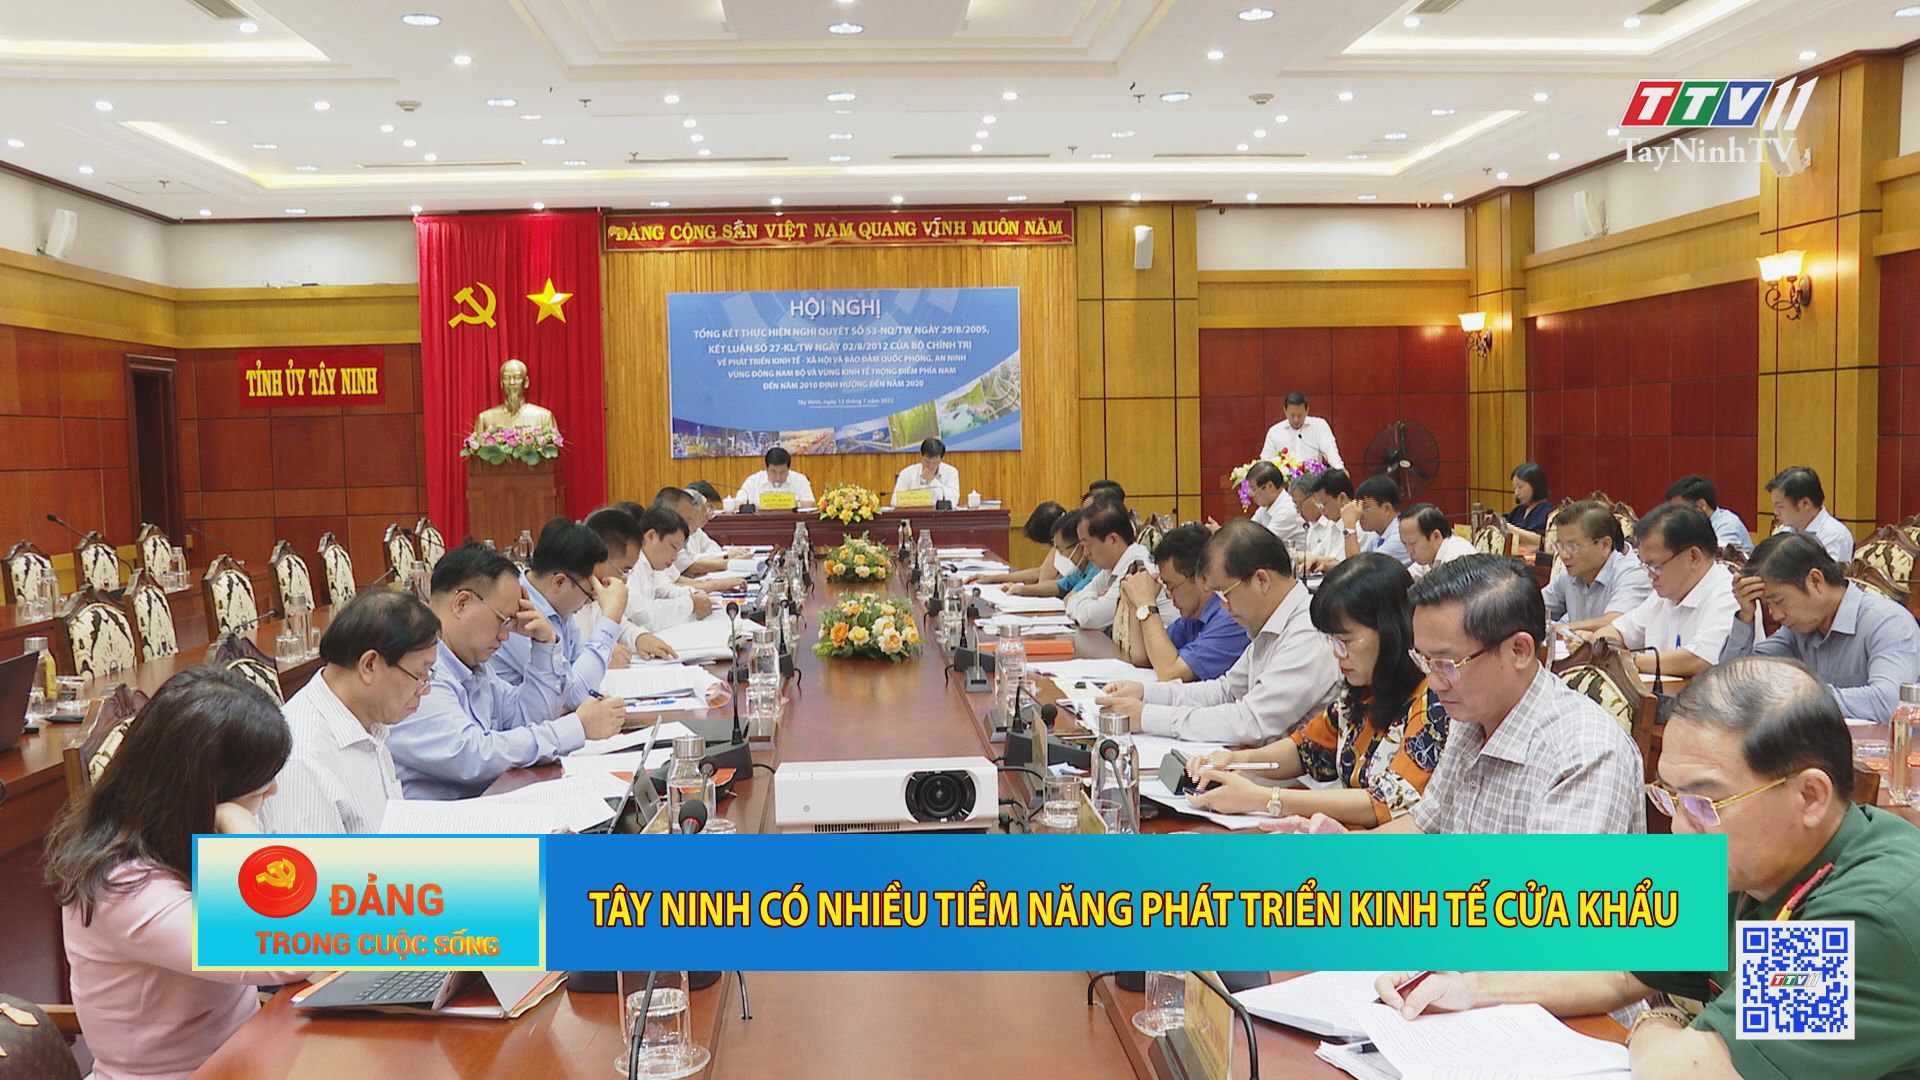 Tây Ninh có nhiều tiềm năng phát triển kinh tế cửa khẩu | Đảng trong cuộc sống | TayNinhTV